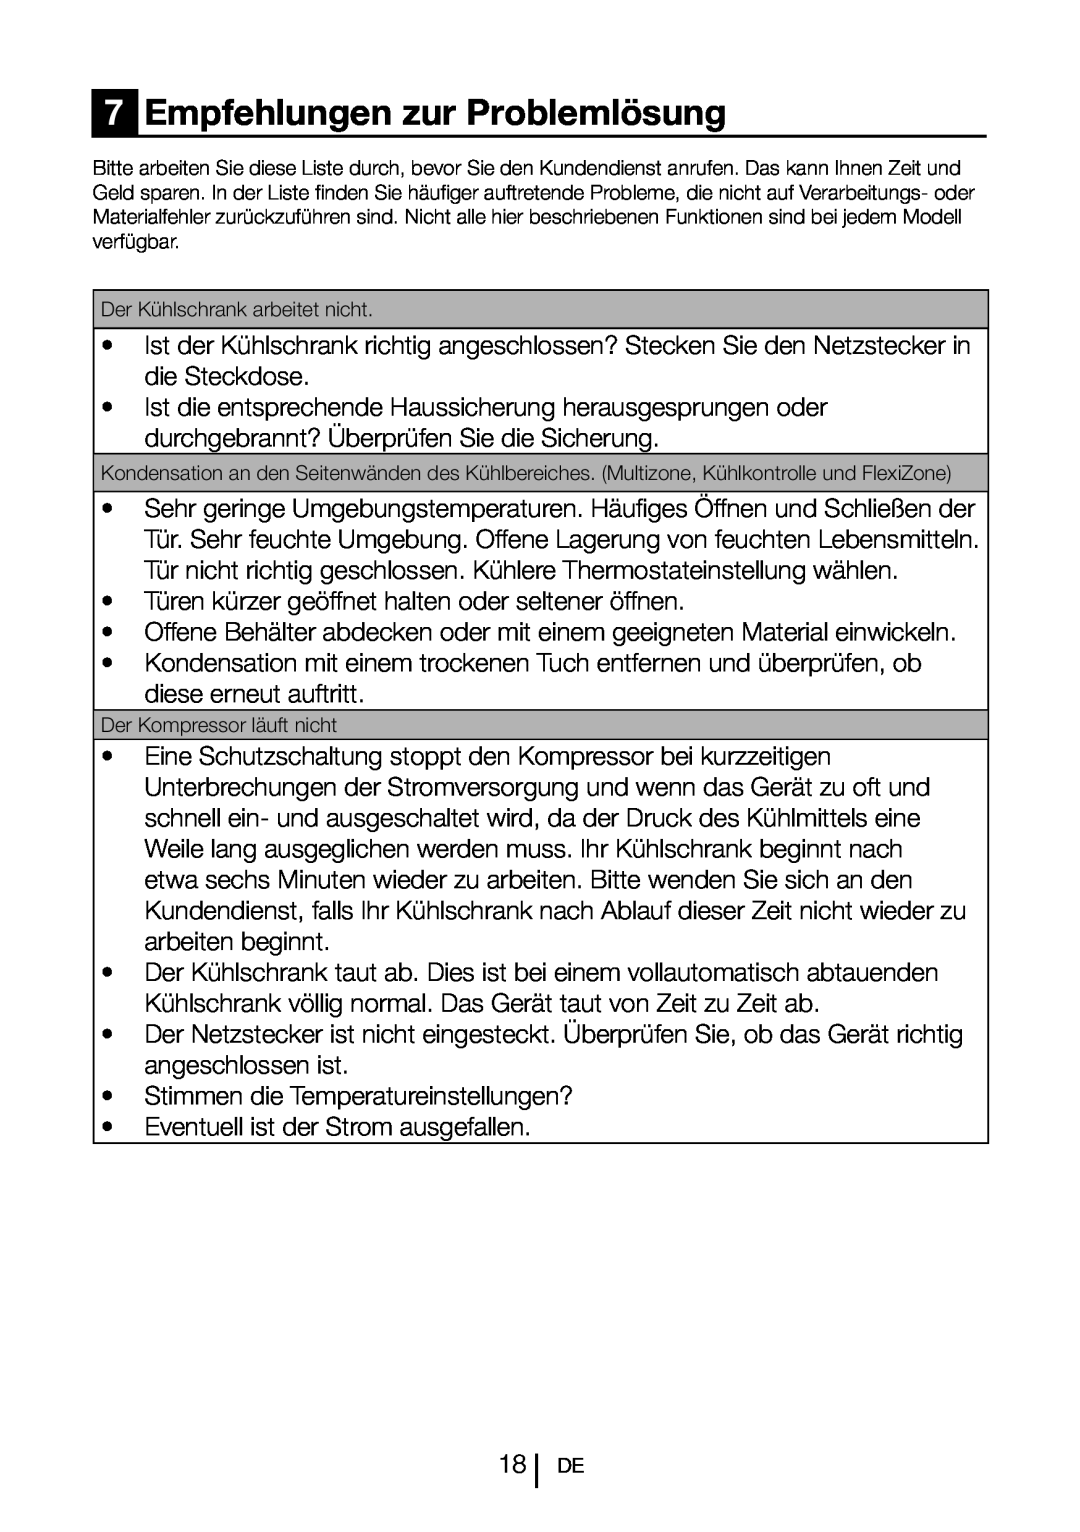 Blomberg SND 9681 XD operating instructions Empfehlungen zur Problemlösung 